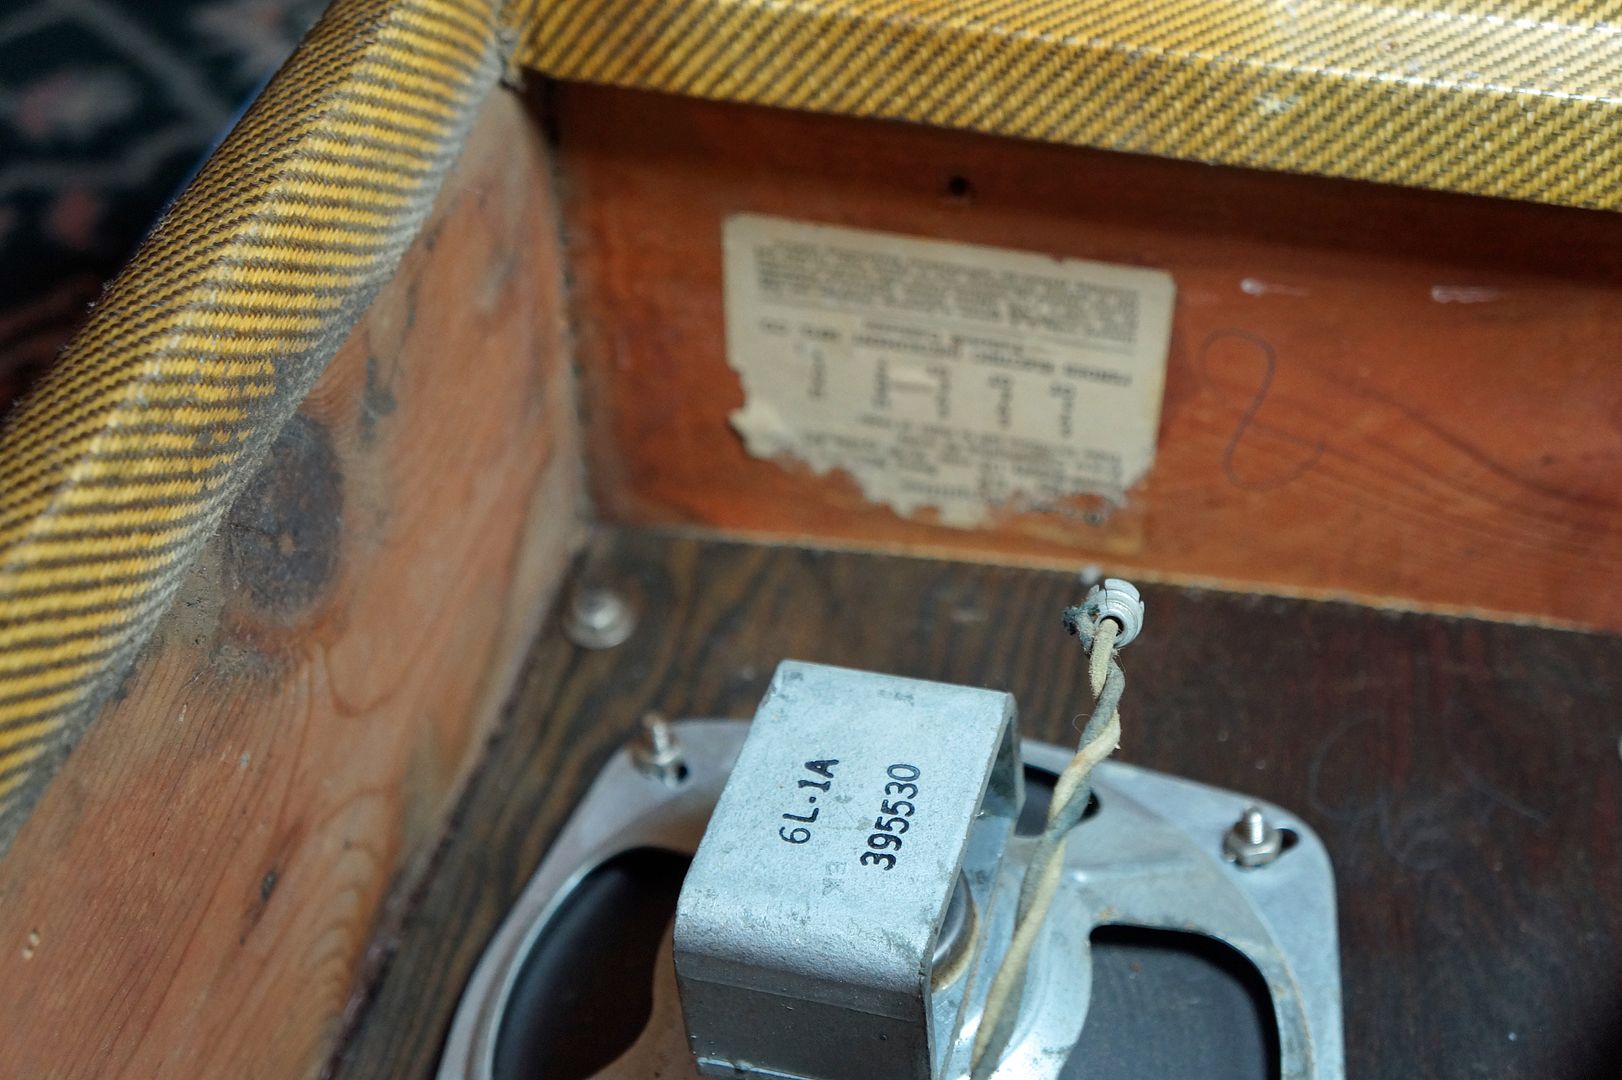 1955 tweed speaker photo speaker original_zpsqxmxb2lk.jpg